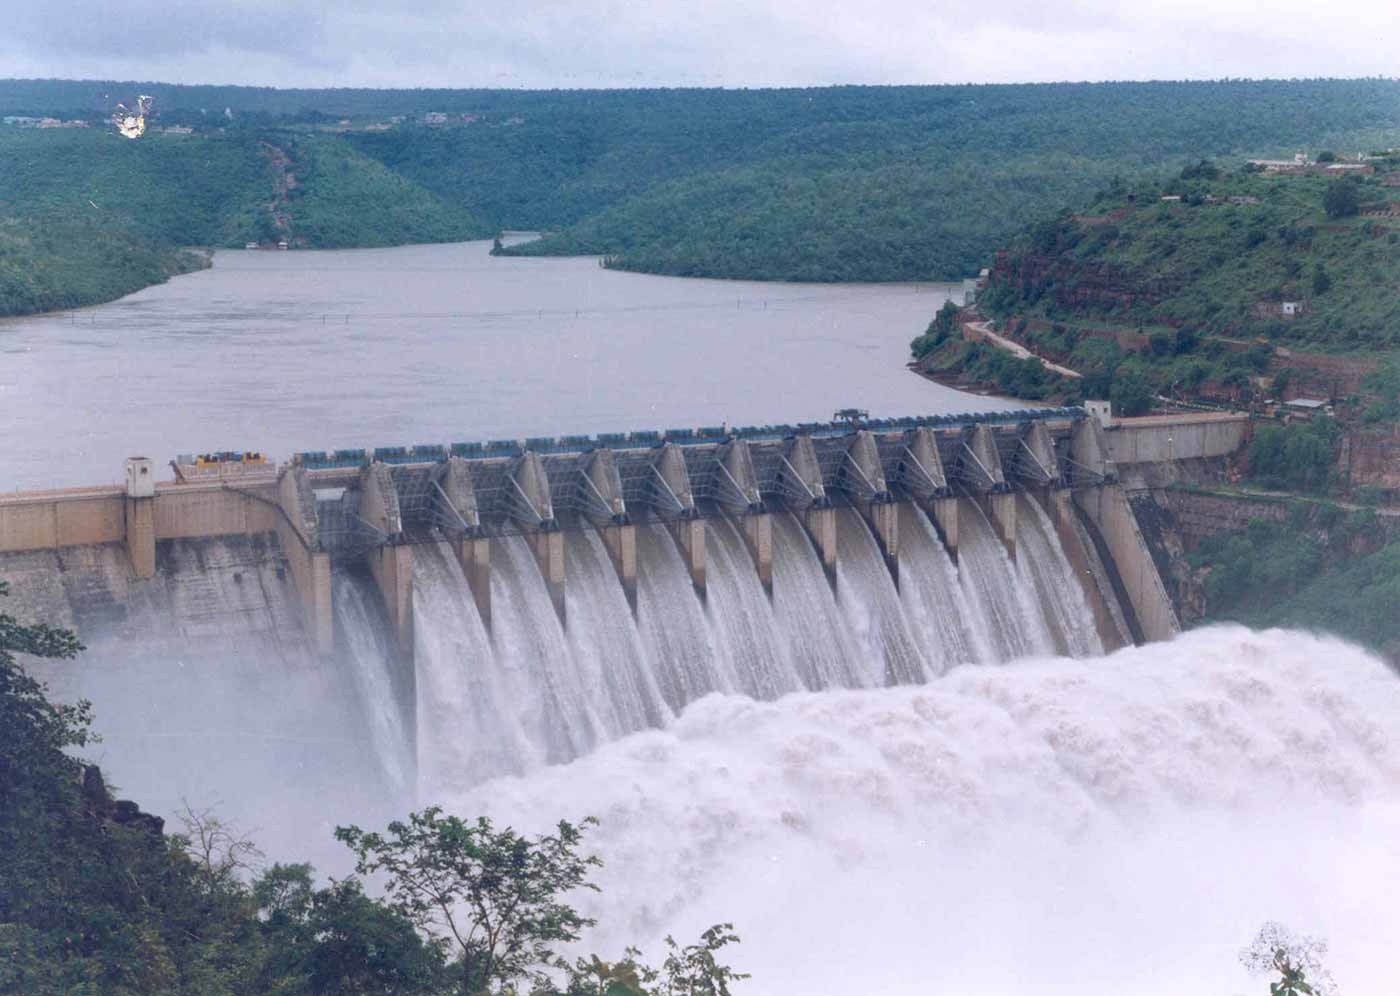 The Srisailam Dam in India.